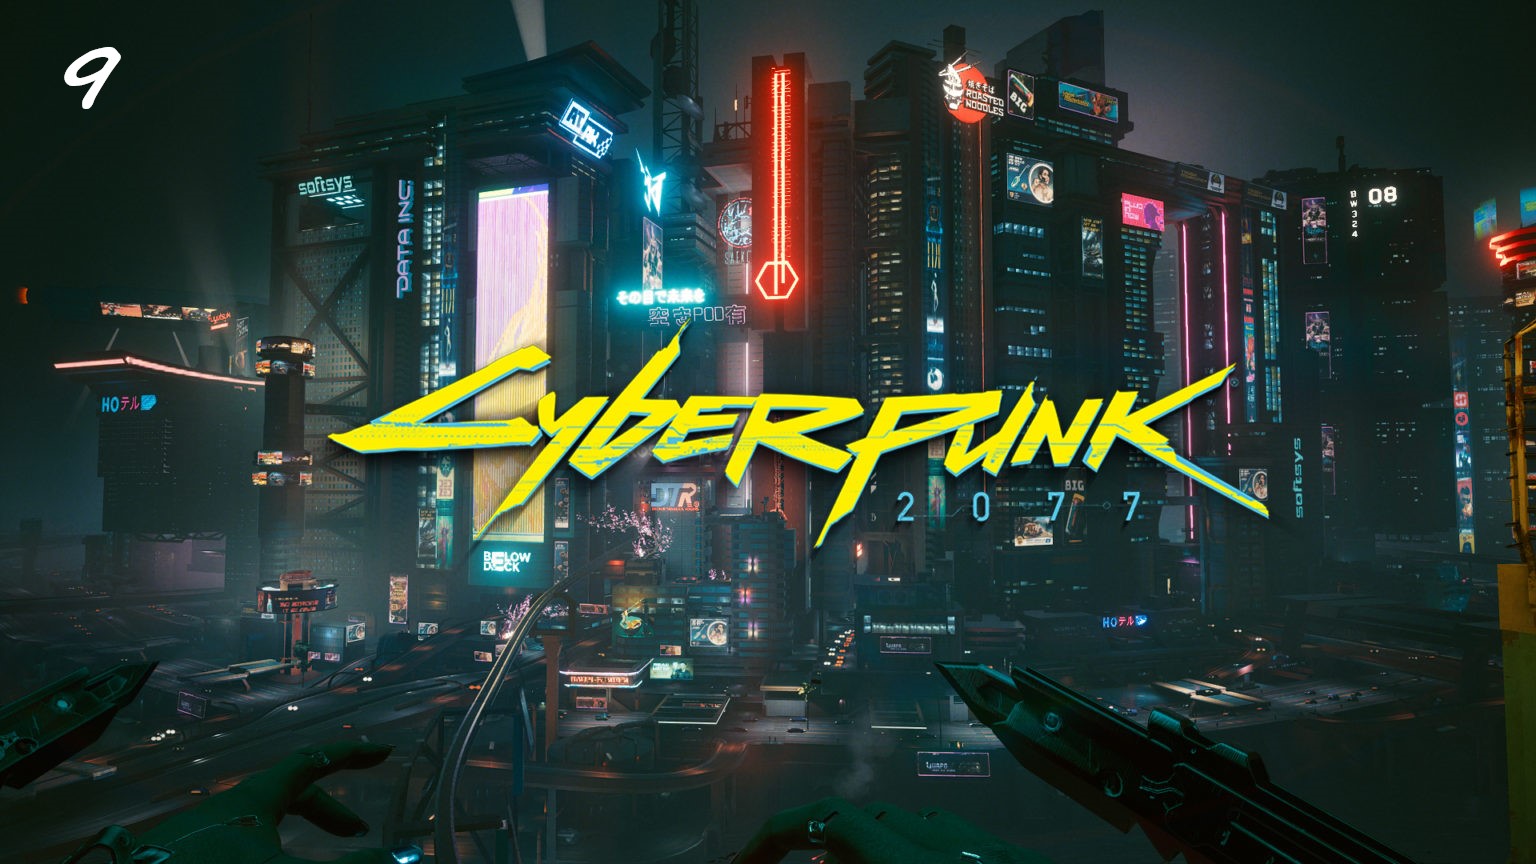 Прохождение Cyberpunk 2077 на русском - Часть девятая. Компэки-Плаза